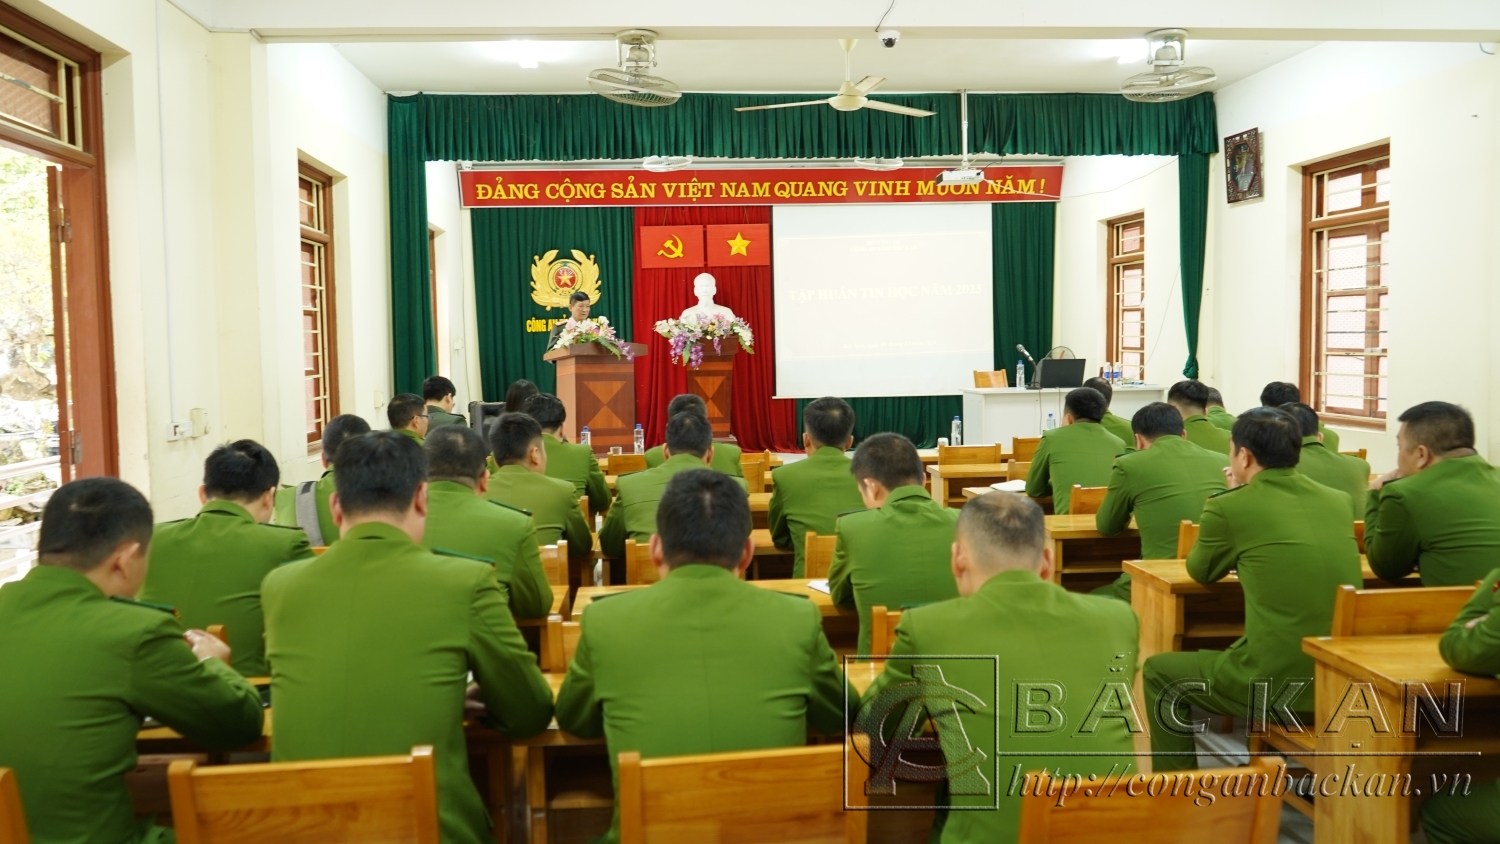 Đại tá Hà Trọng Trung, Phó Bí thư Đảng uỷ, Phó Giám đốc Công an tỉnh khai mạc lớp bồi dưỡng